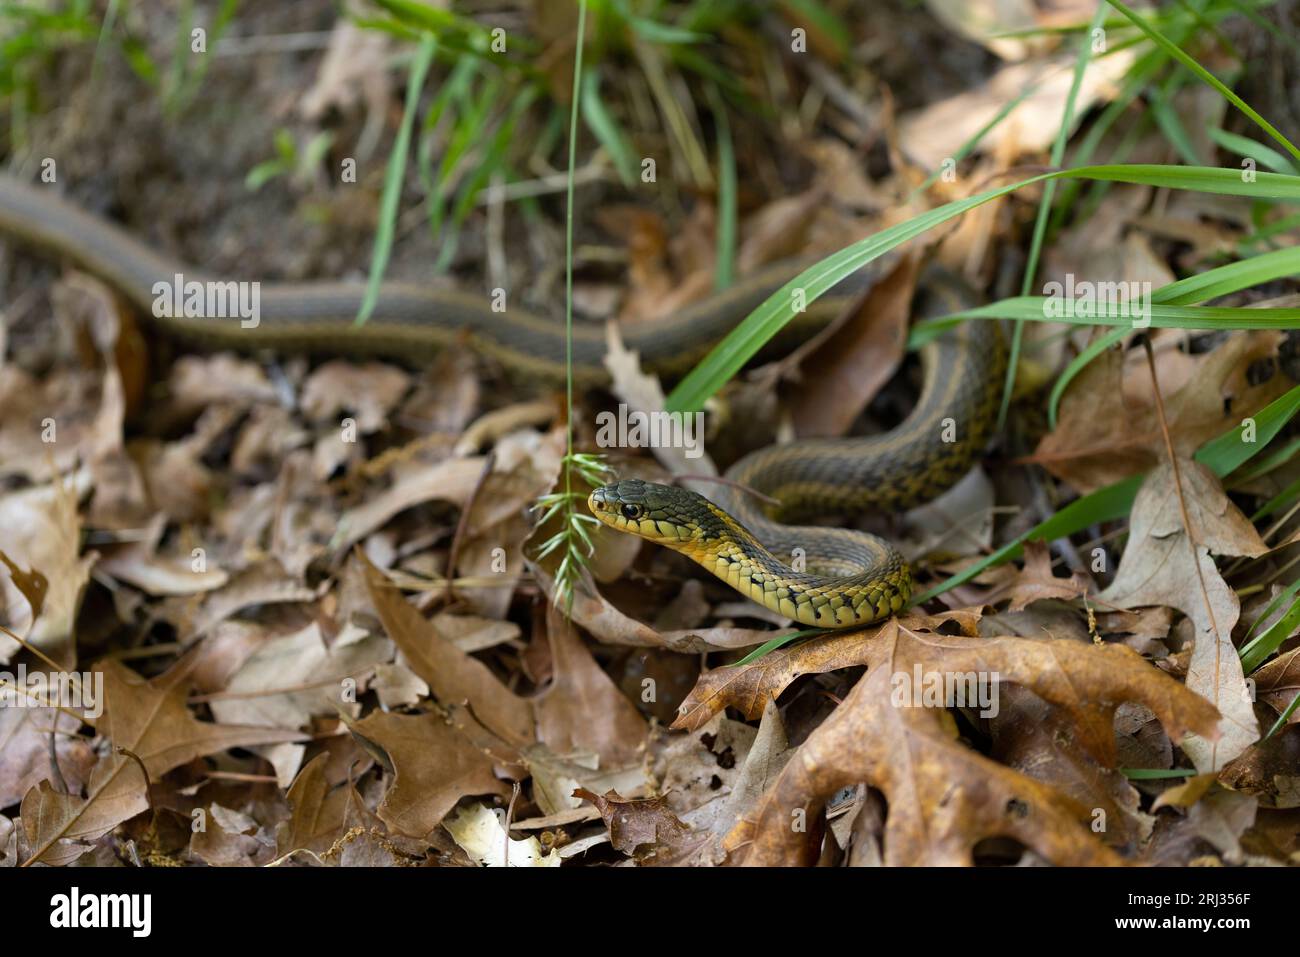 Serpiente de liguero común Thamnophis sirtalis, adulto en el suelo del bosque, área de gestión de vida silvestre de Cox Hall Creek, Nueva Jersey, EE.UU., mayo Foto de stock